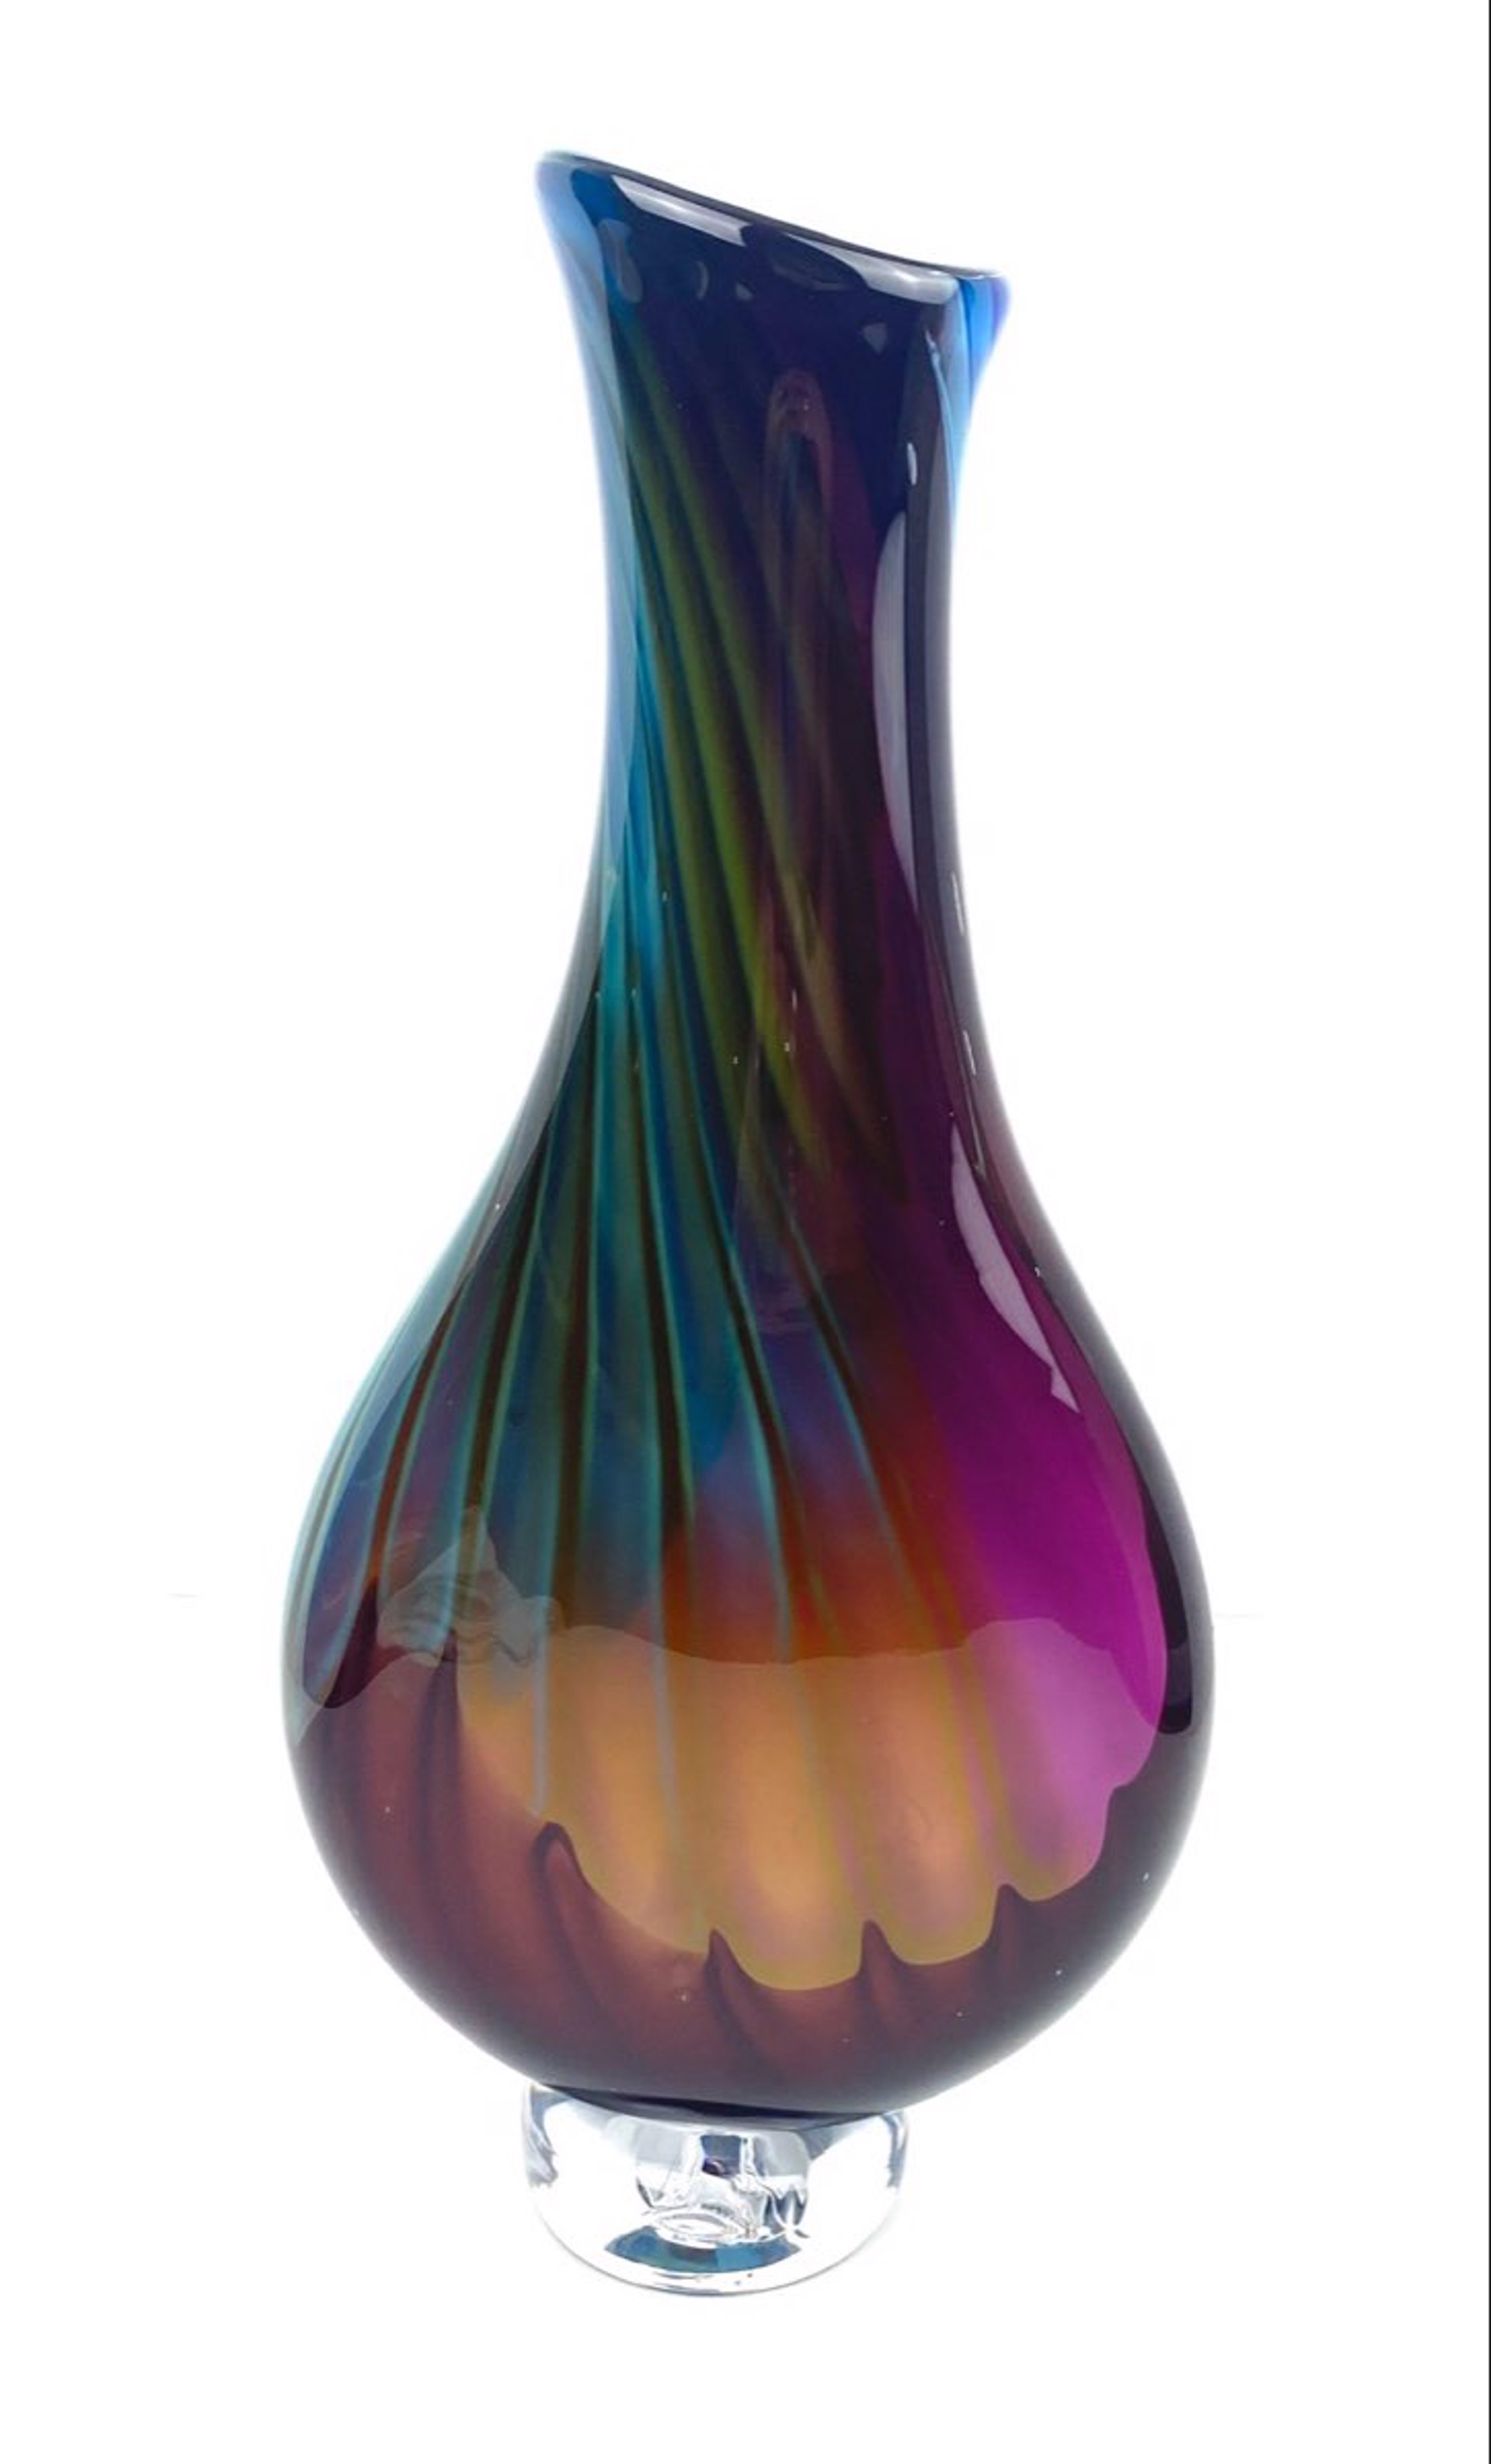 Sunset Vase by Joseph Hobbs